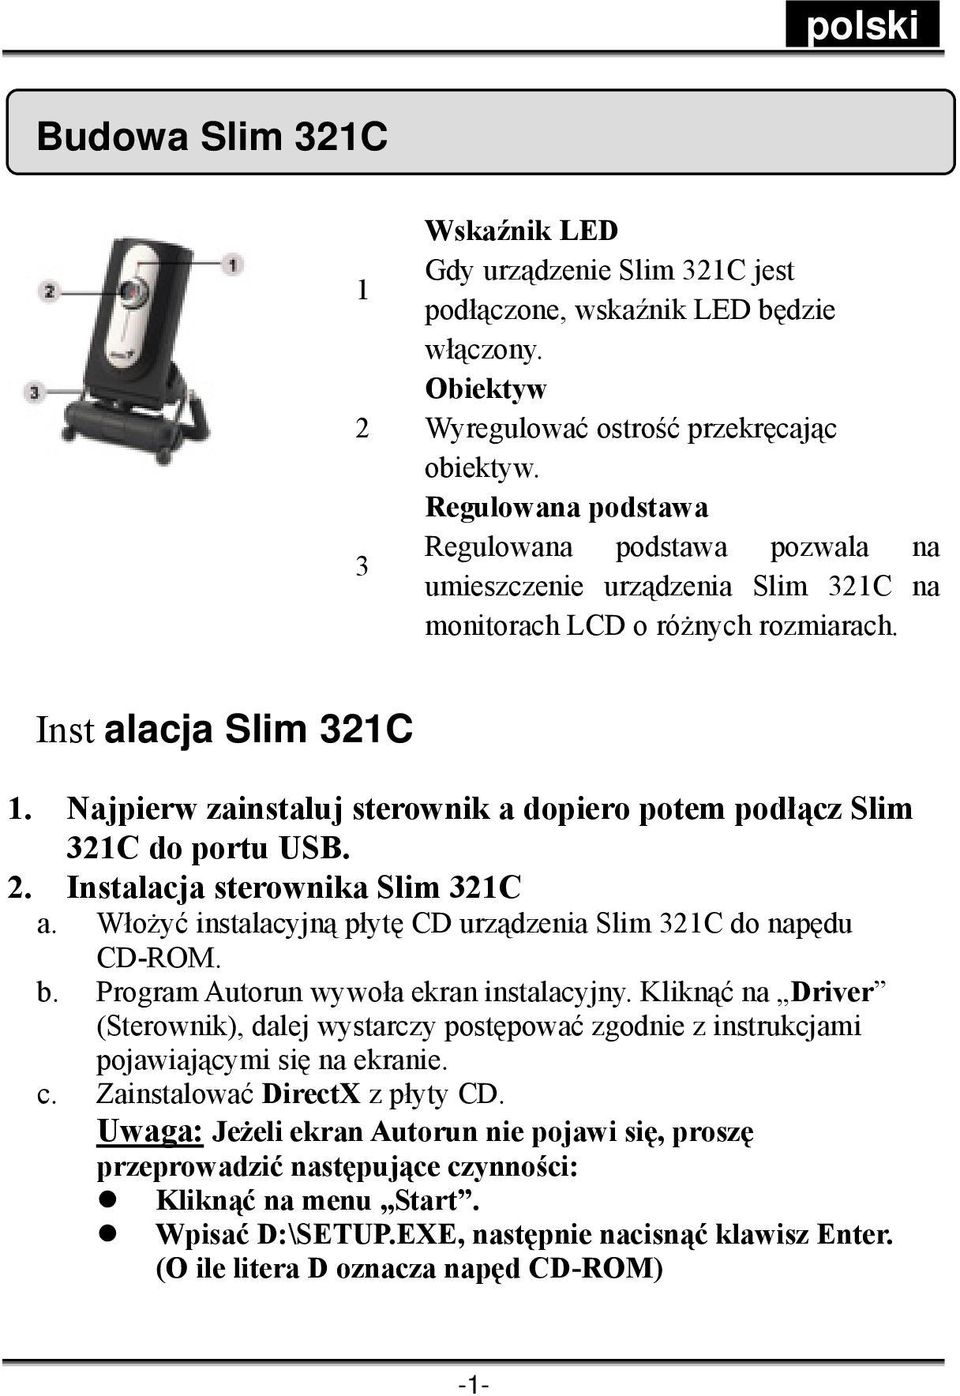 Najpierw zainstaluj sterownik a dopiero potem podłącz Slim 321C do portu USB. 2. Instalacja sterownika Slim 321C a. Włożyć instalacyjną płytę CD urządzenia Slim 321C do napędu CD-ROM. b.